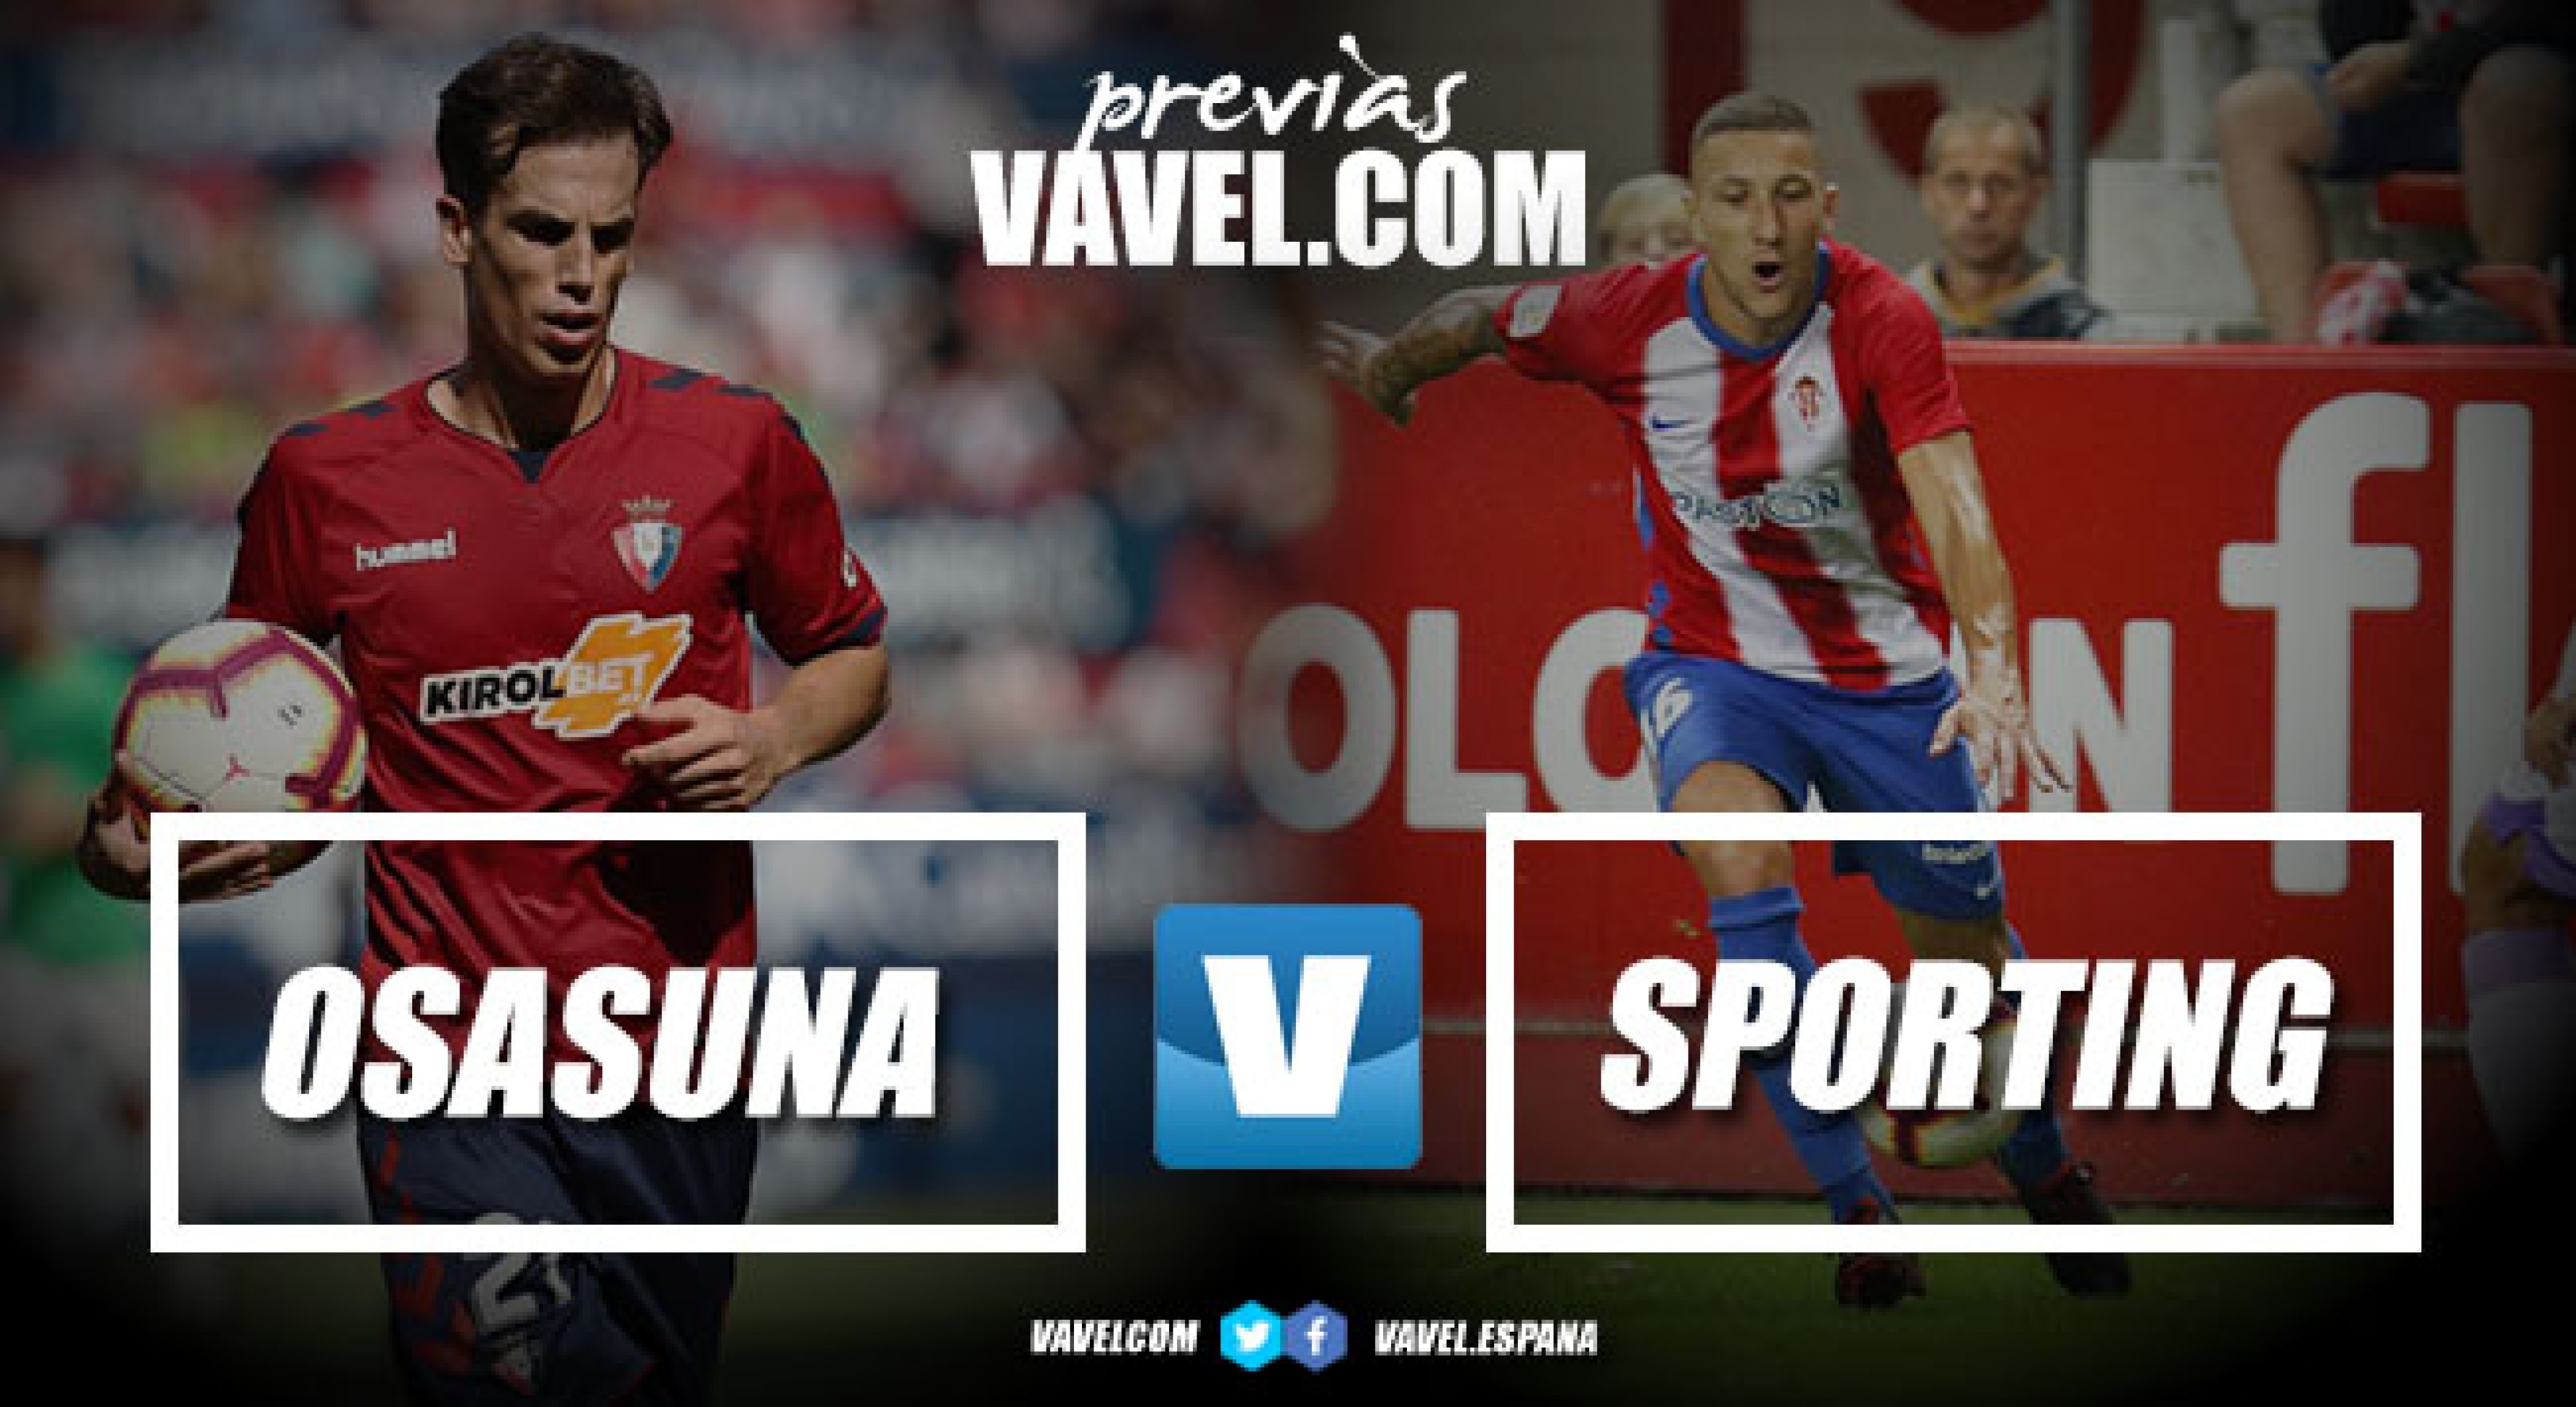 Previa Osasuna - Sporting: un gran duelo frente a un rival peligroso